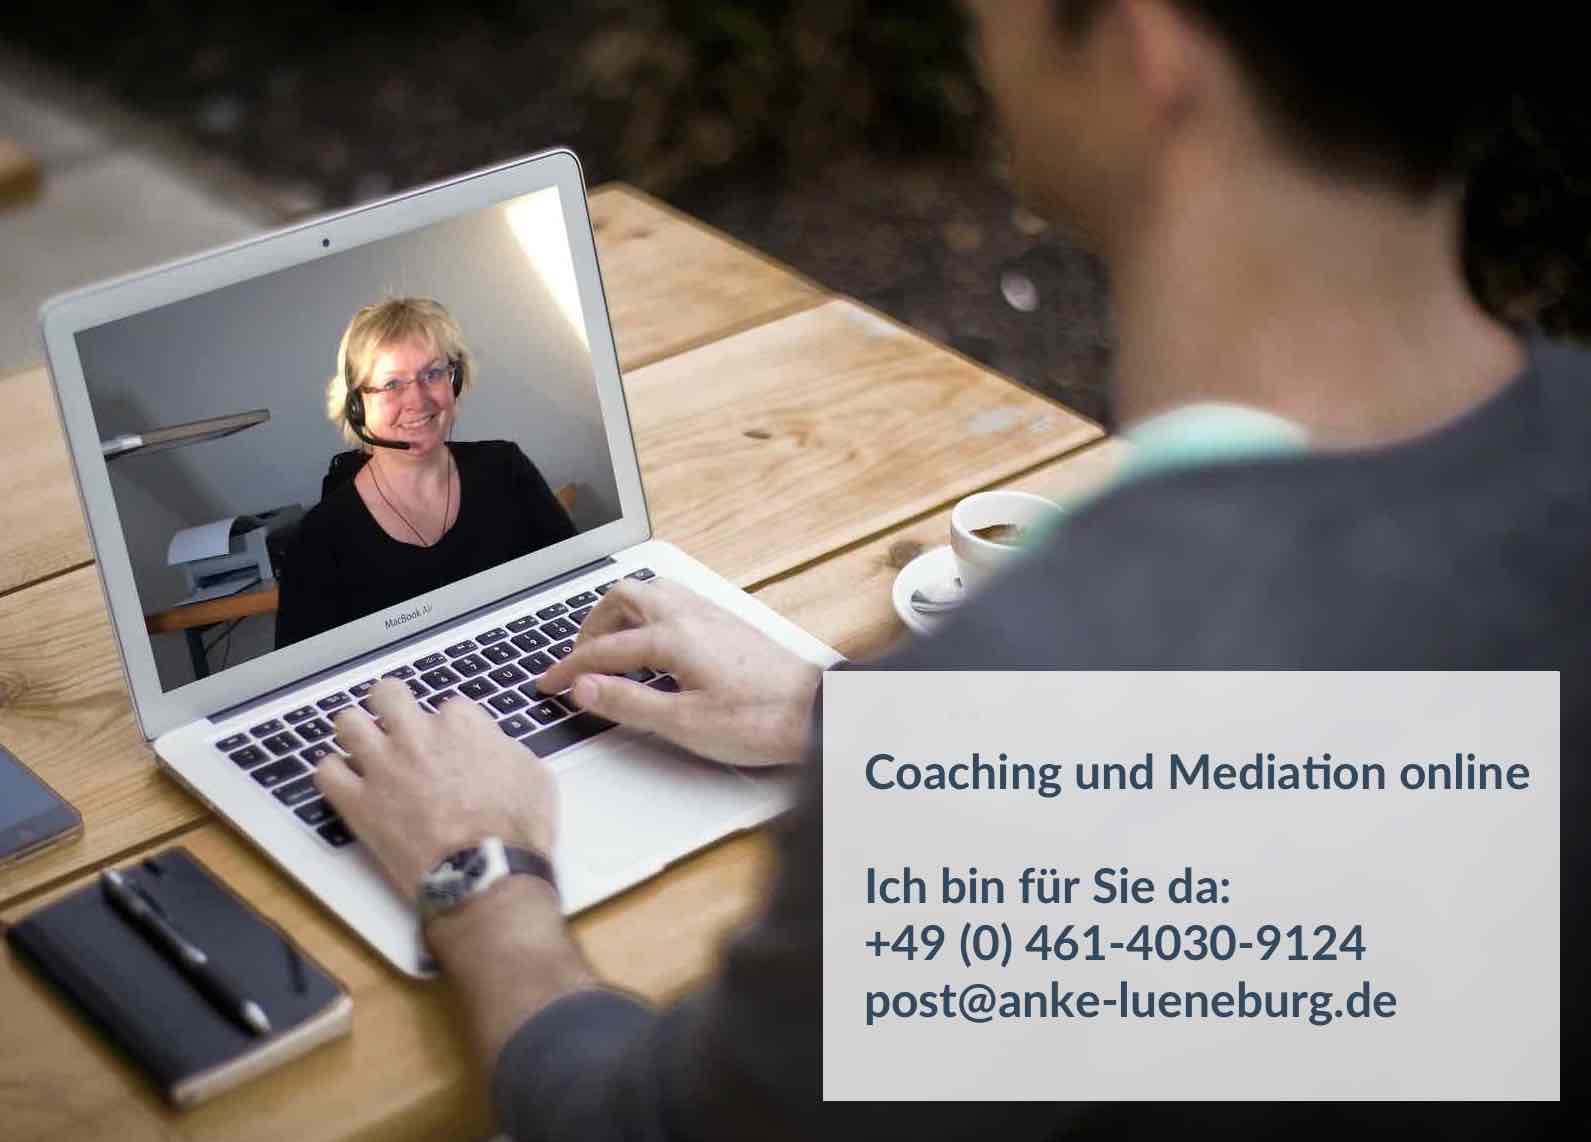 Coaching und Mediation online - Anke Lüneburg - Flensburg